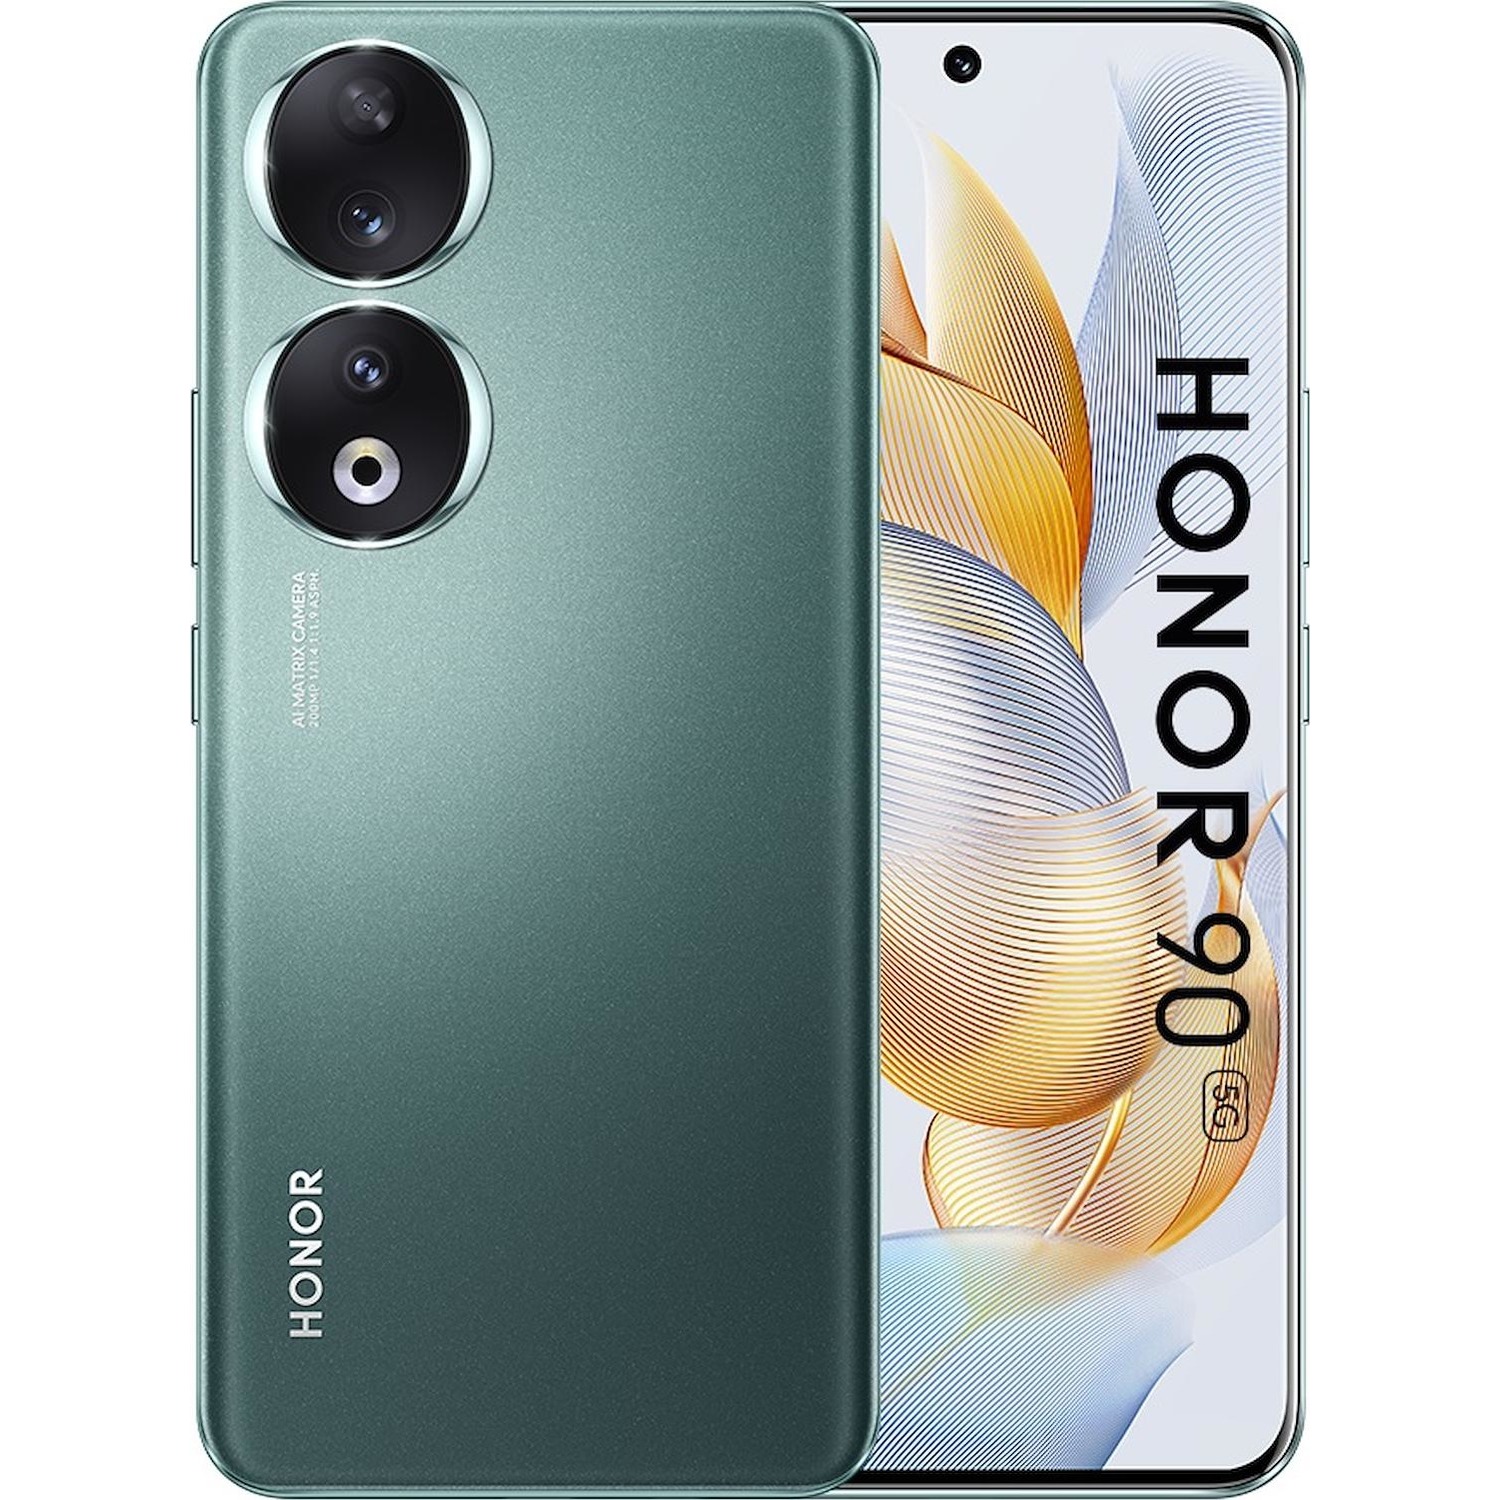 Image of Smartphone Honor 90 emerald green verde